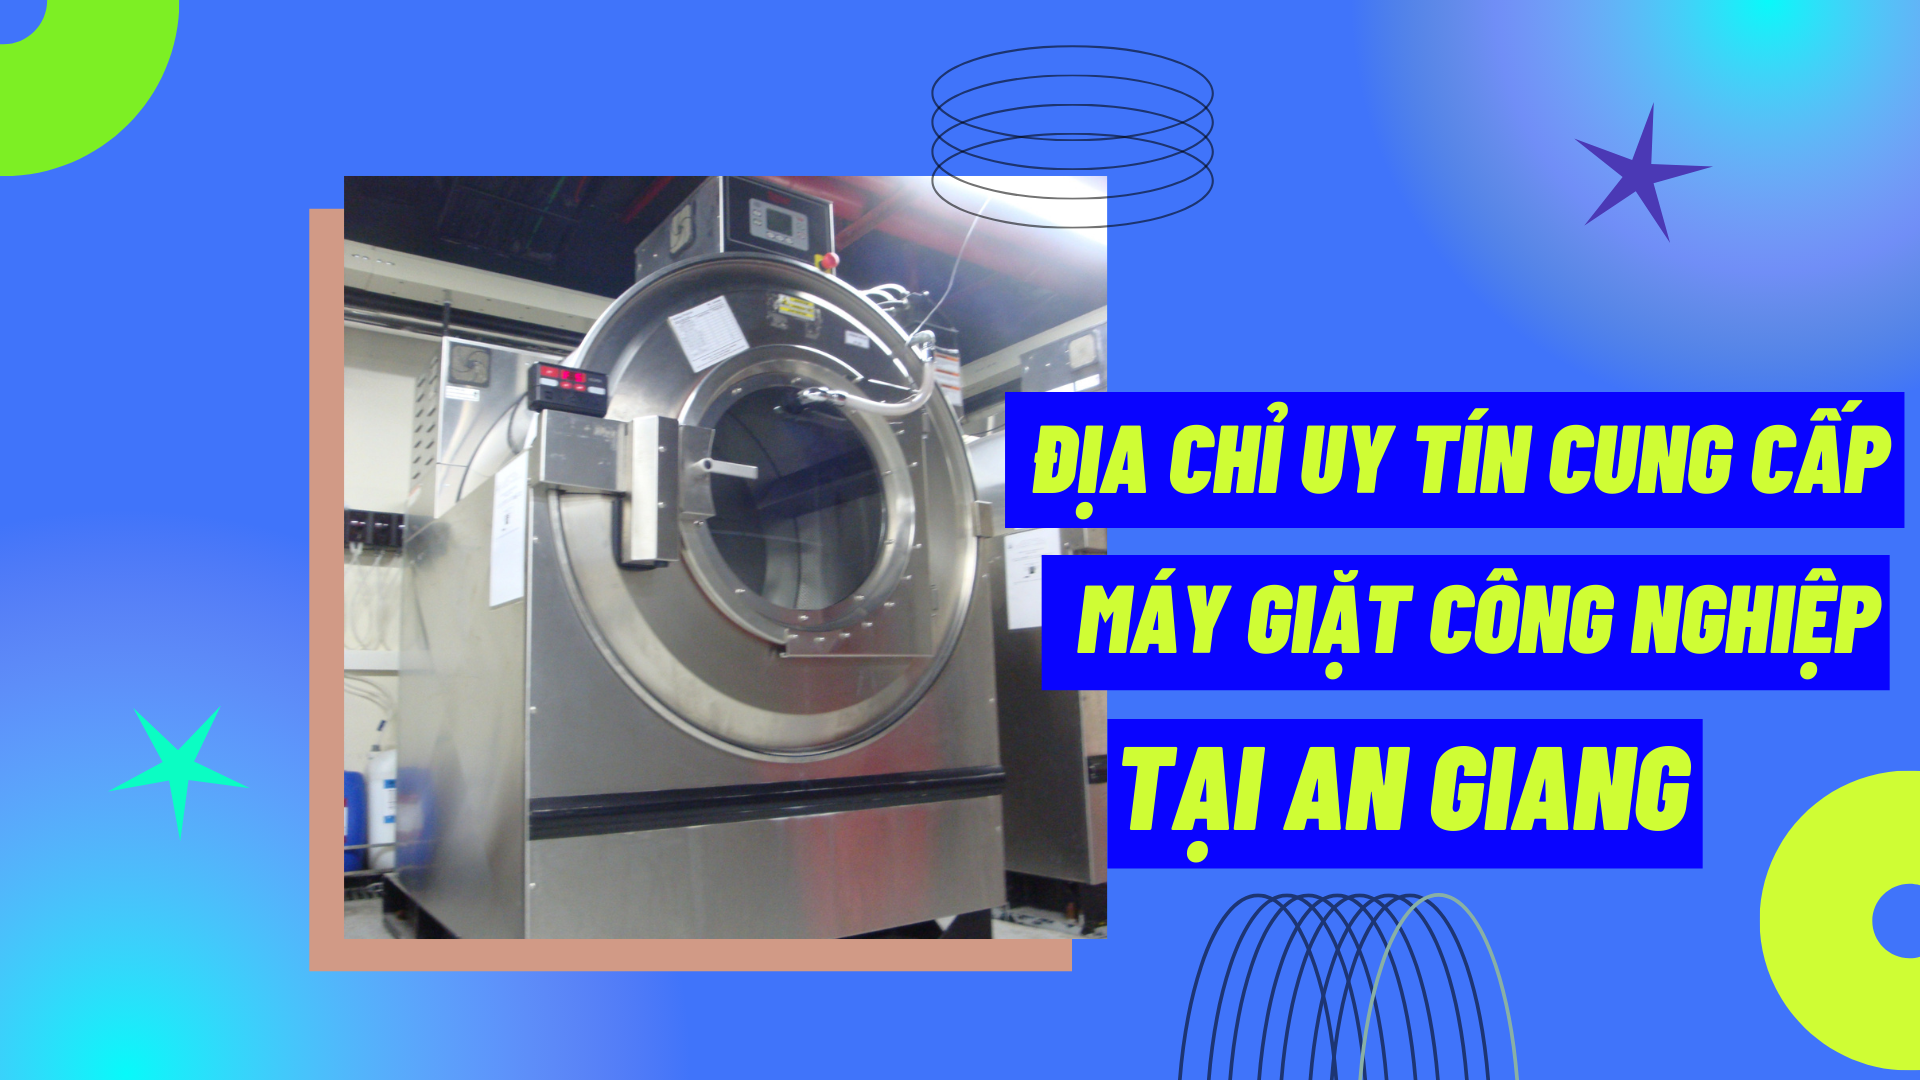 Địa chỉ uy tín cung cấp máy giặt công nghiệp tại An Giang